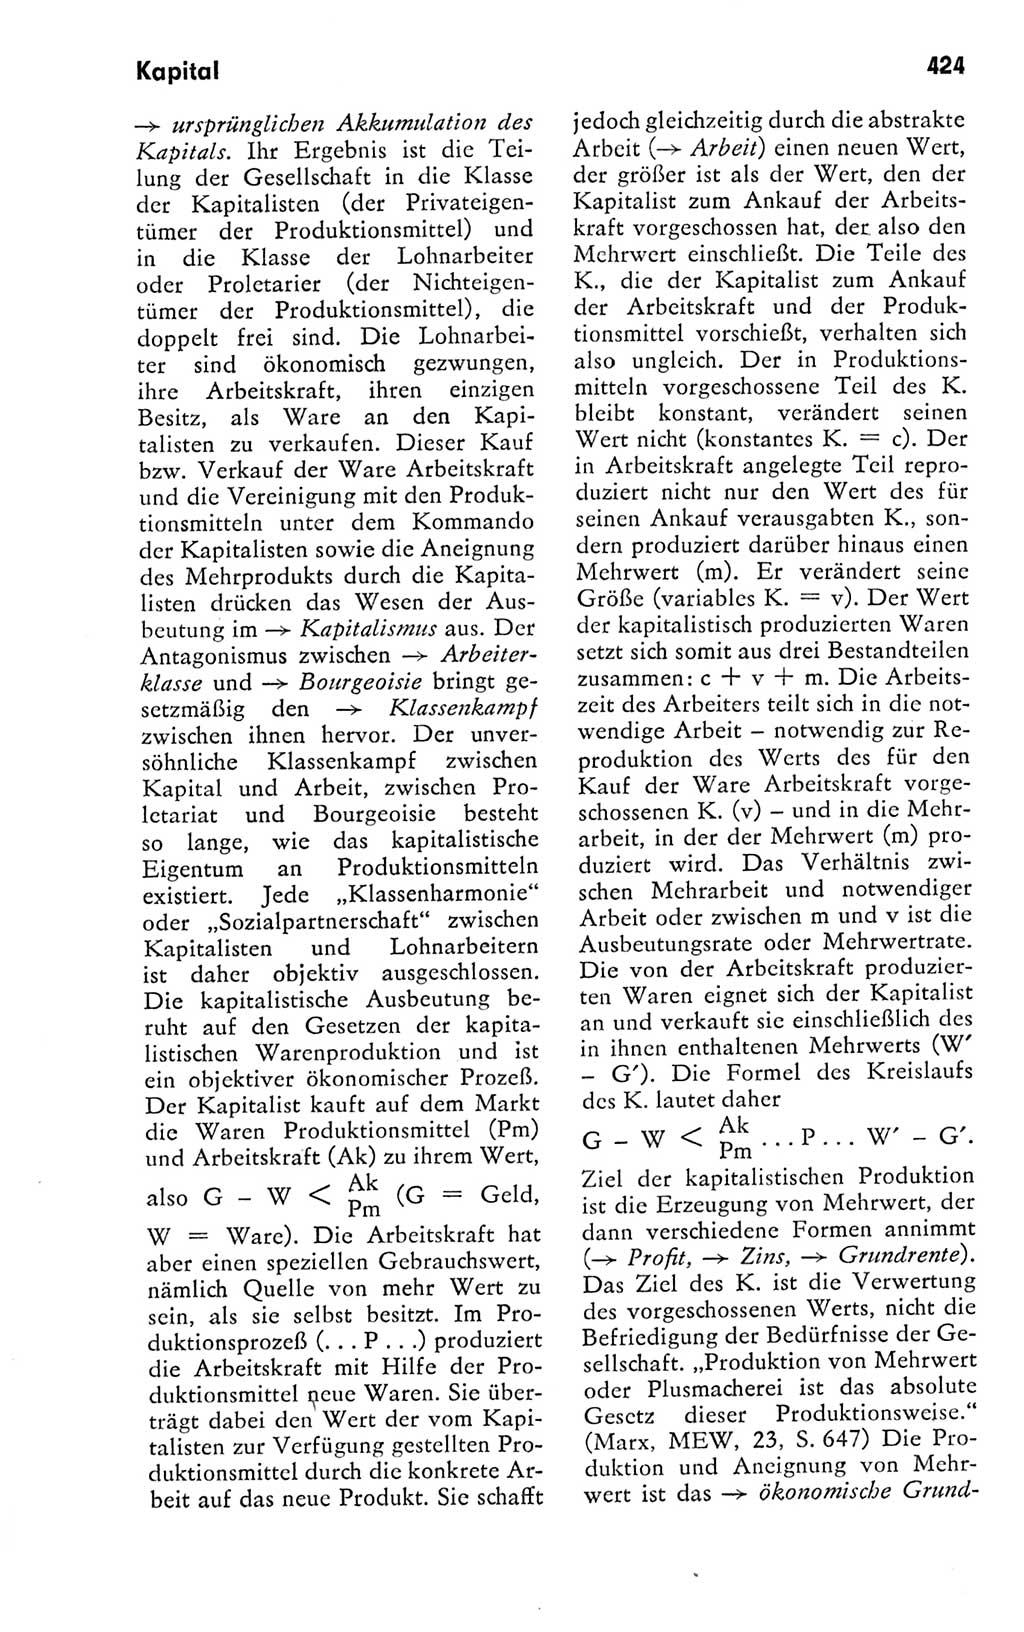 Kleines politisches Wörterbuch [Deutsche Demokratische Republik (DDR)] 1978, Seite 424 (Kl. pol. Wb. DDR 1978, S. 424)